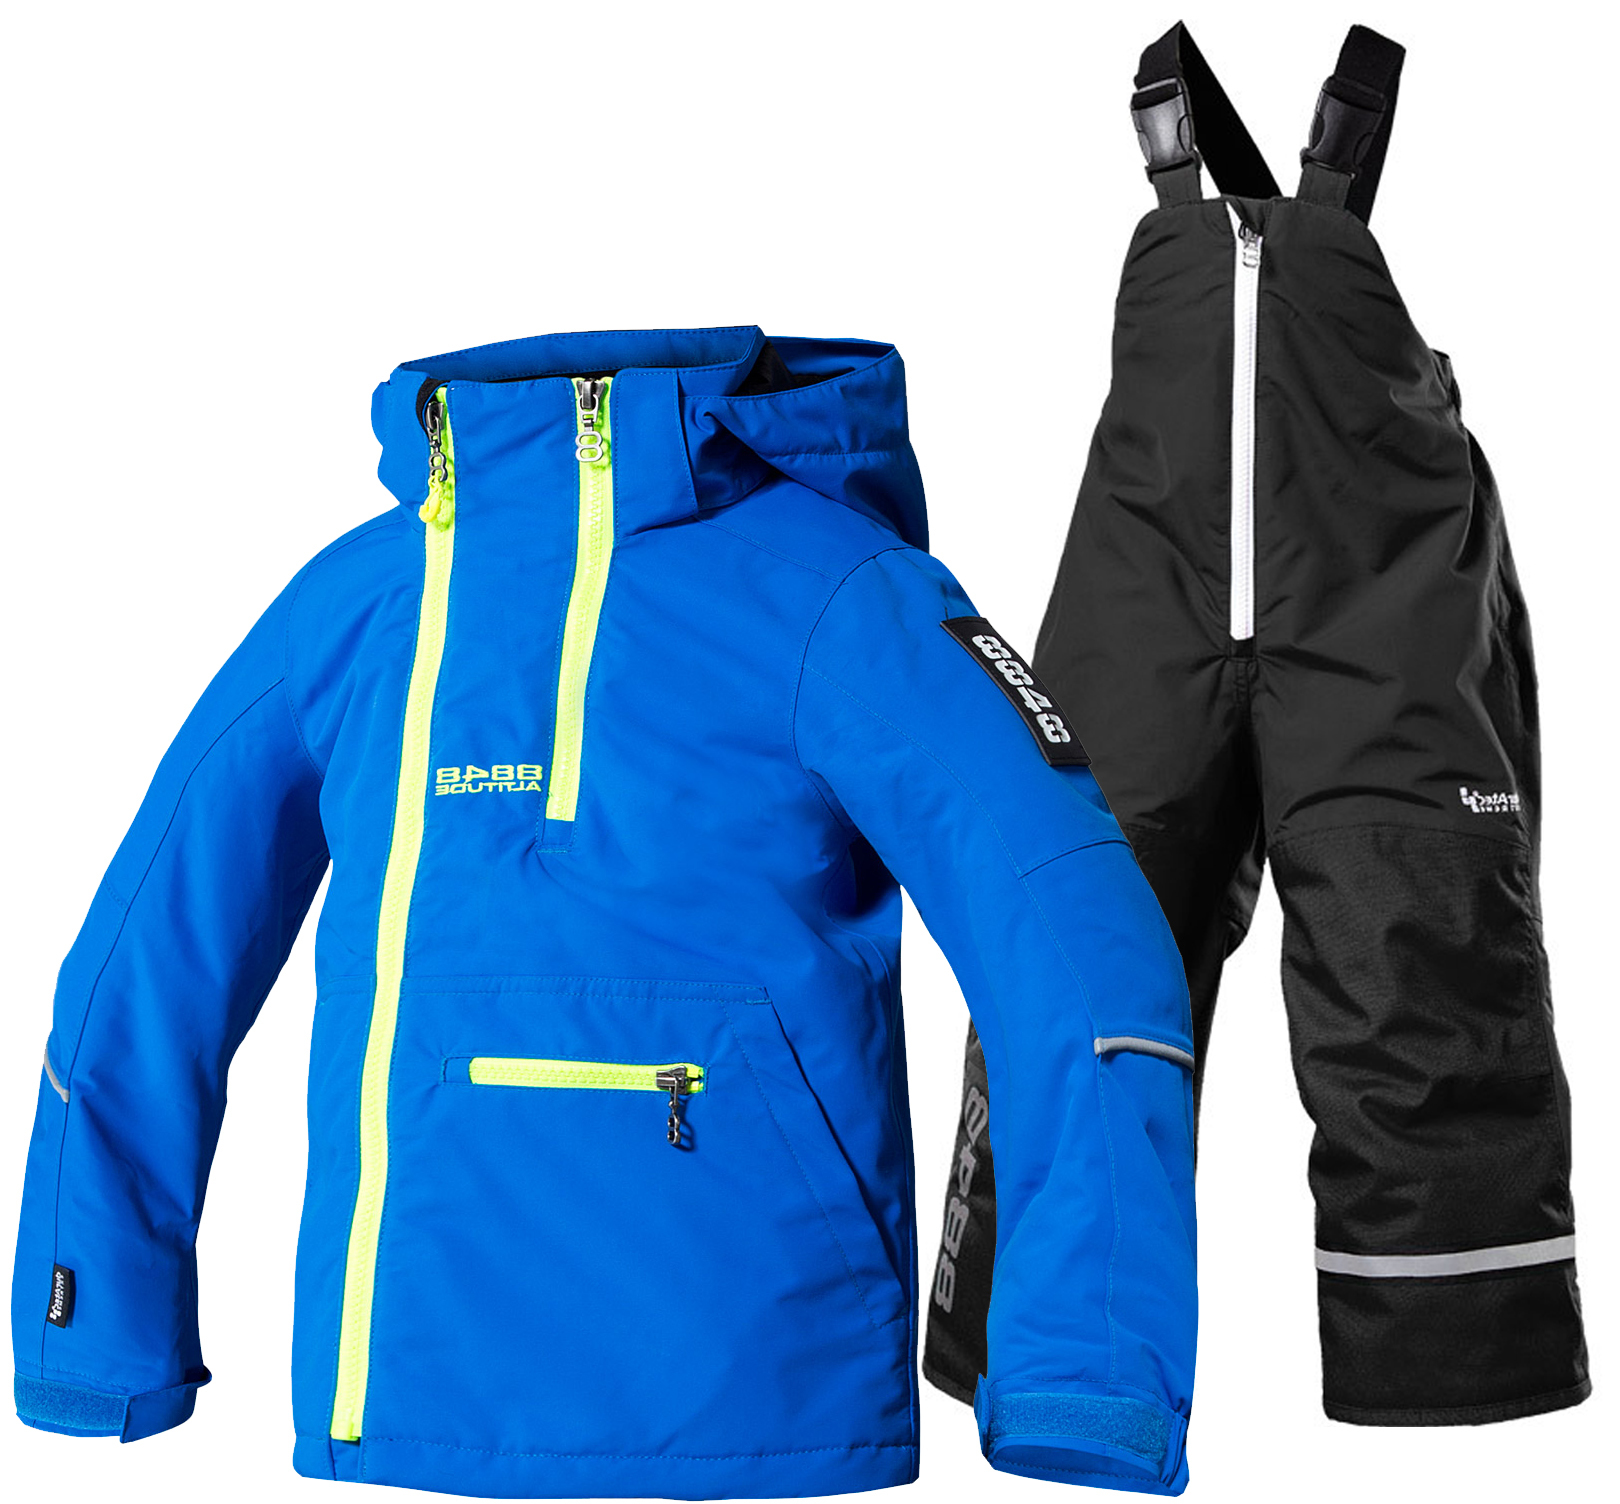 Детские лыжный костюм. Горнолыжный костюм Altitude 8848 детский. Бренды горнолыжных комбинезонов. Российский бренд горнолыжной одежды.